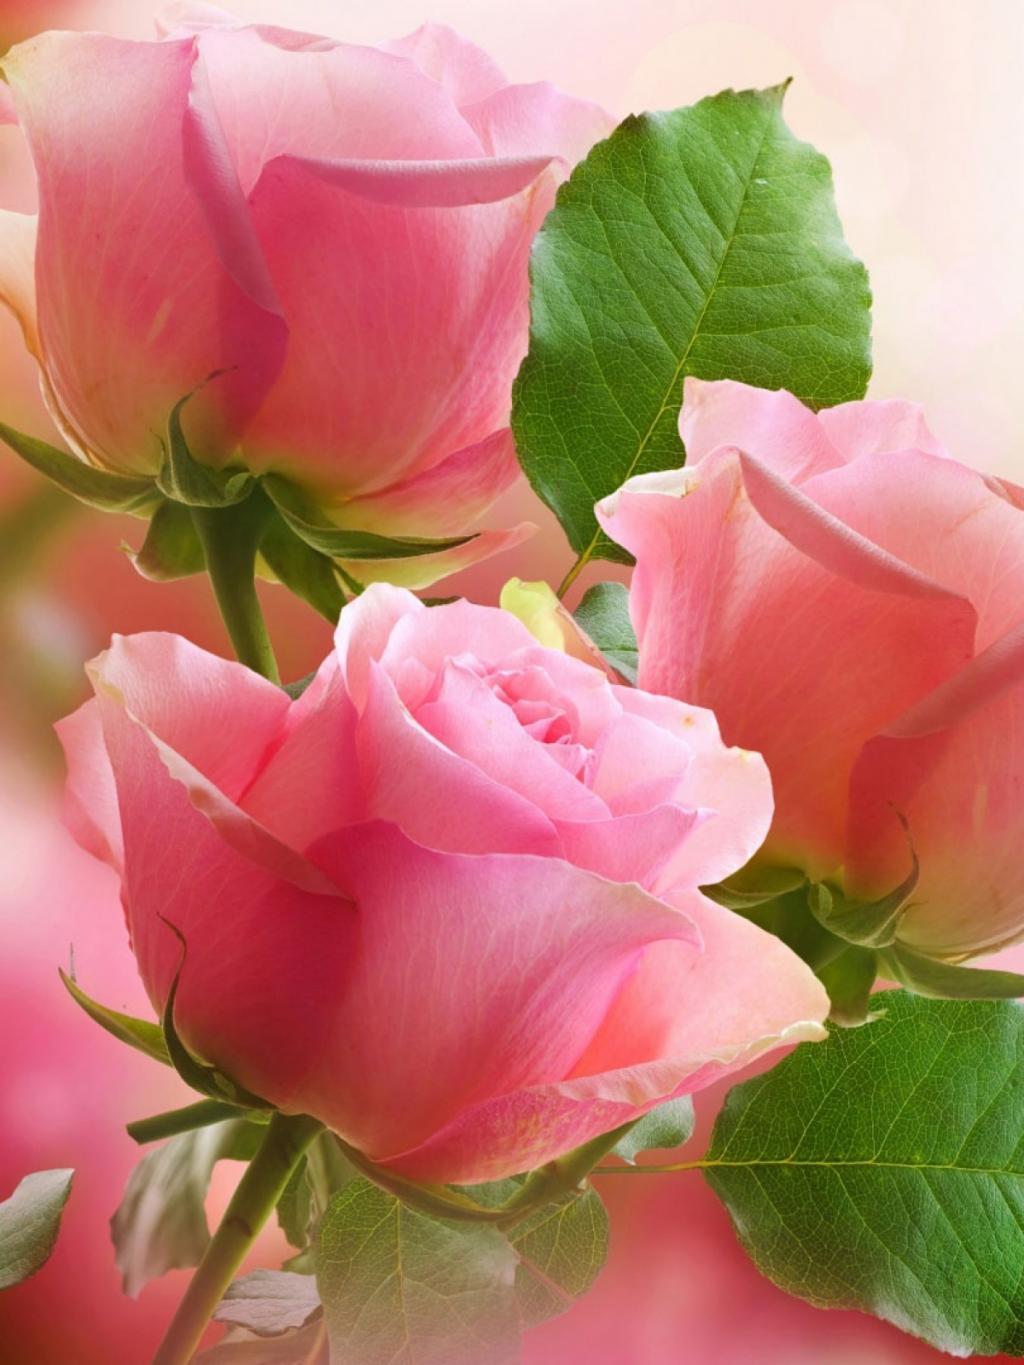 壁纸 新鲜的粉红玫瑰花 2560x1600 HD 高清壁纸, 图片, 照片